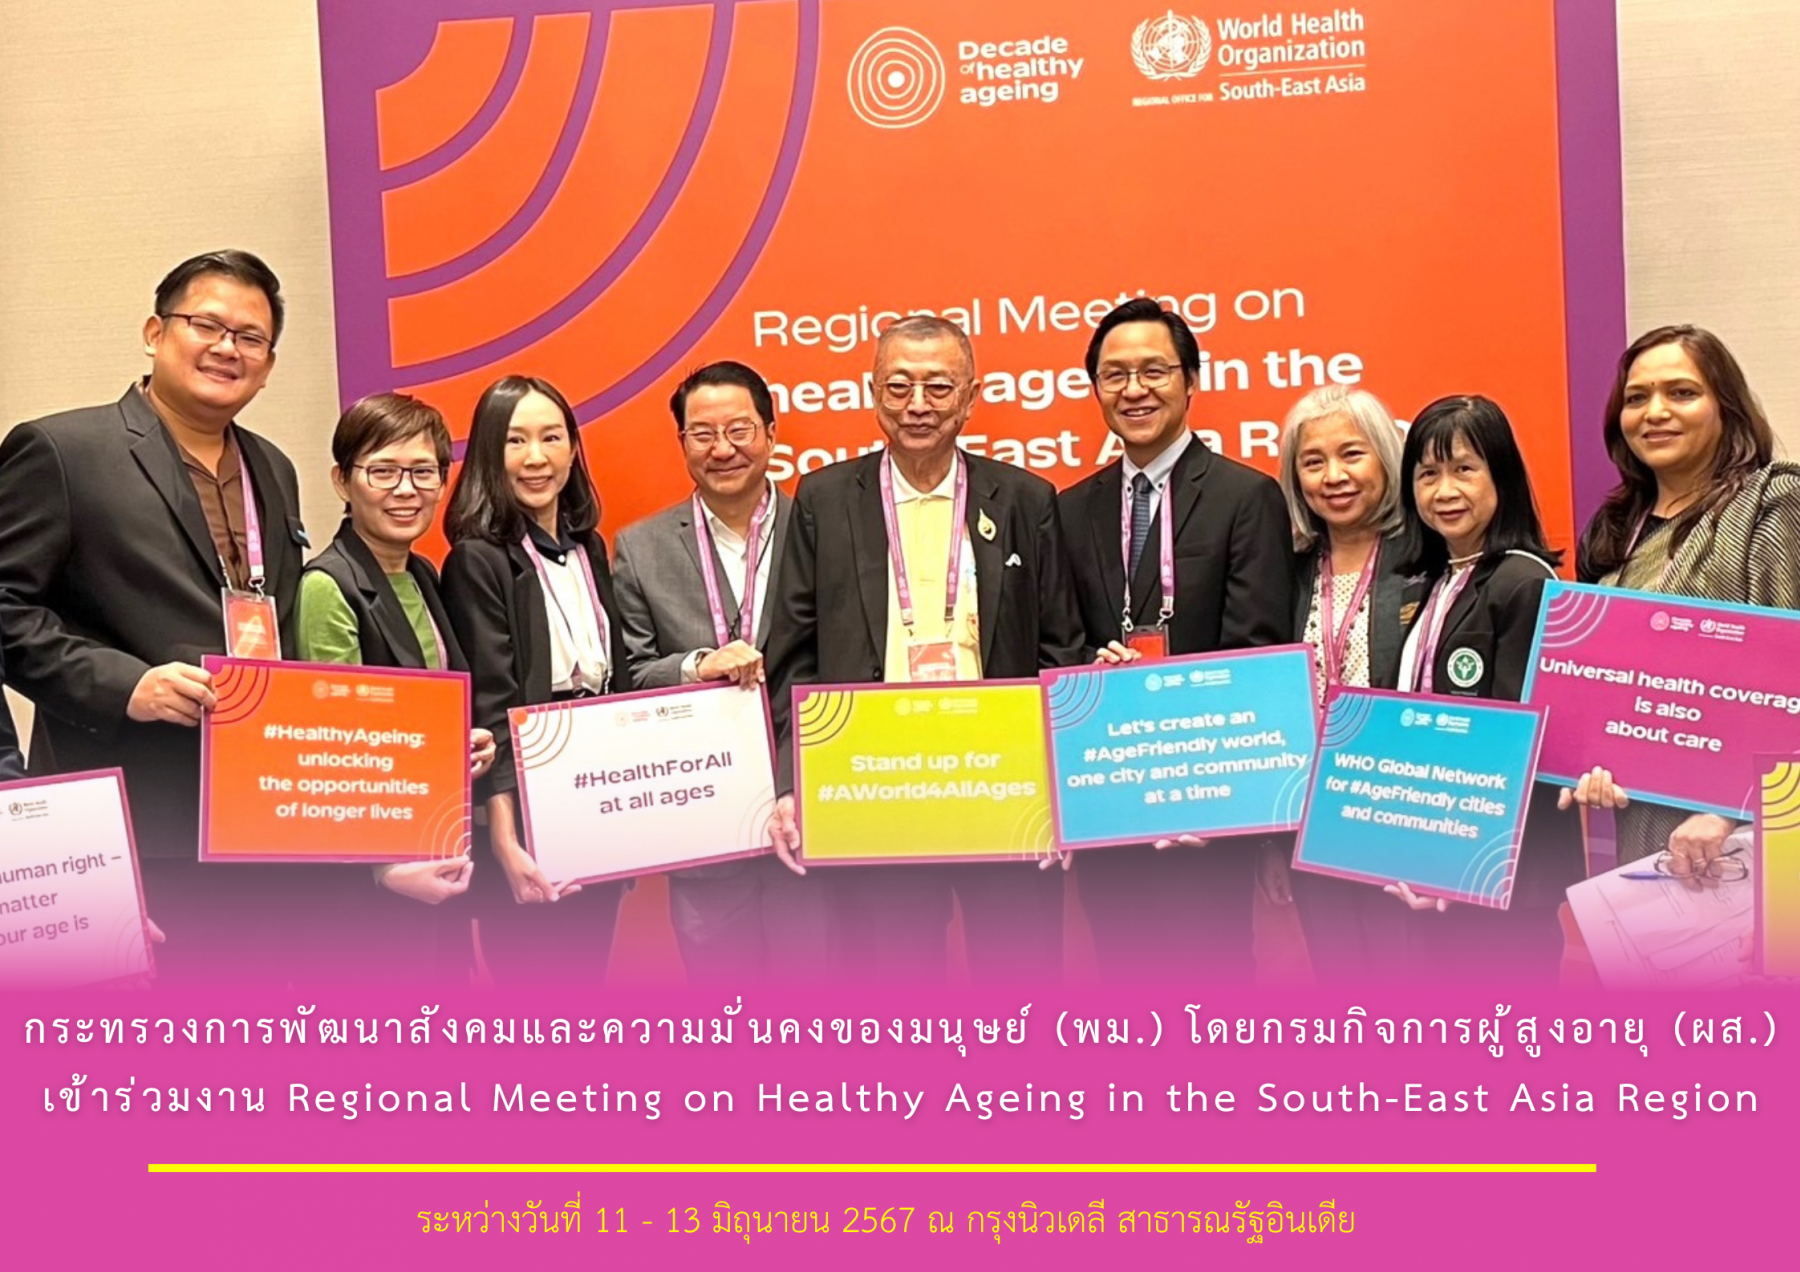 กระทรวงการพัฒนาสังคมและความมั่นคงของมนุษย์ (พม.) โดยกรมกิจการผู้สูงอายุ (ผส.) เข้าร่วมงาน Regional Meeting on Healthy Ageing in the South-East Asia Region